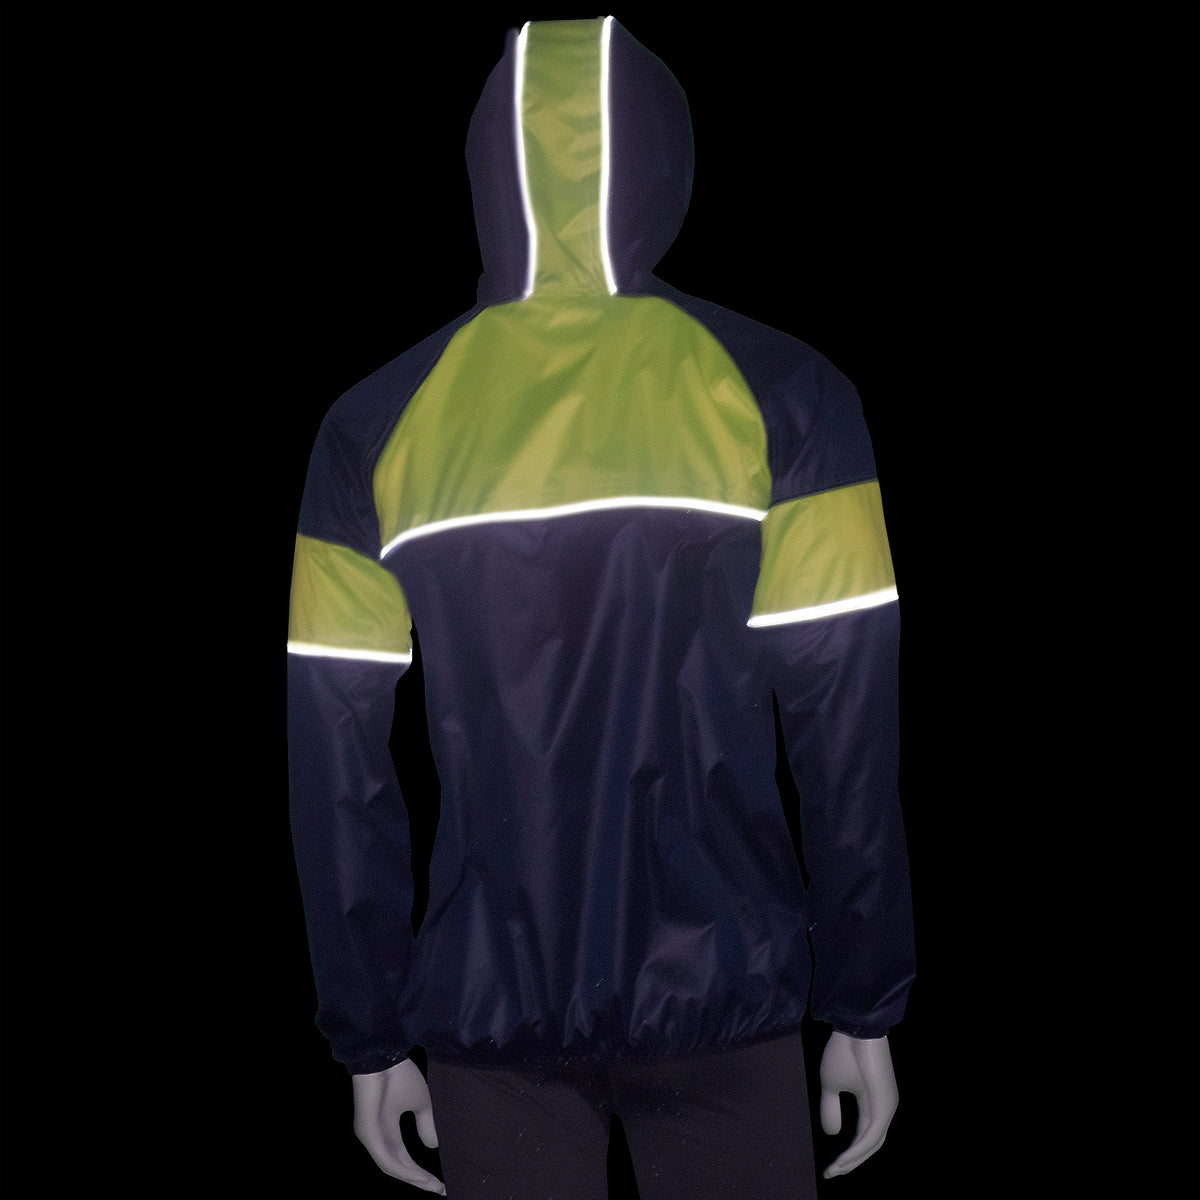 Men's Reflective illumiNITE Triathlon Jacket